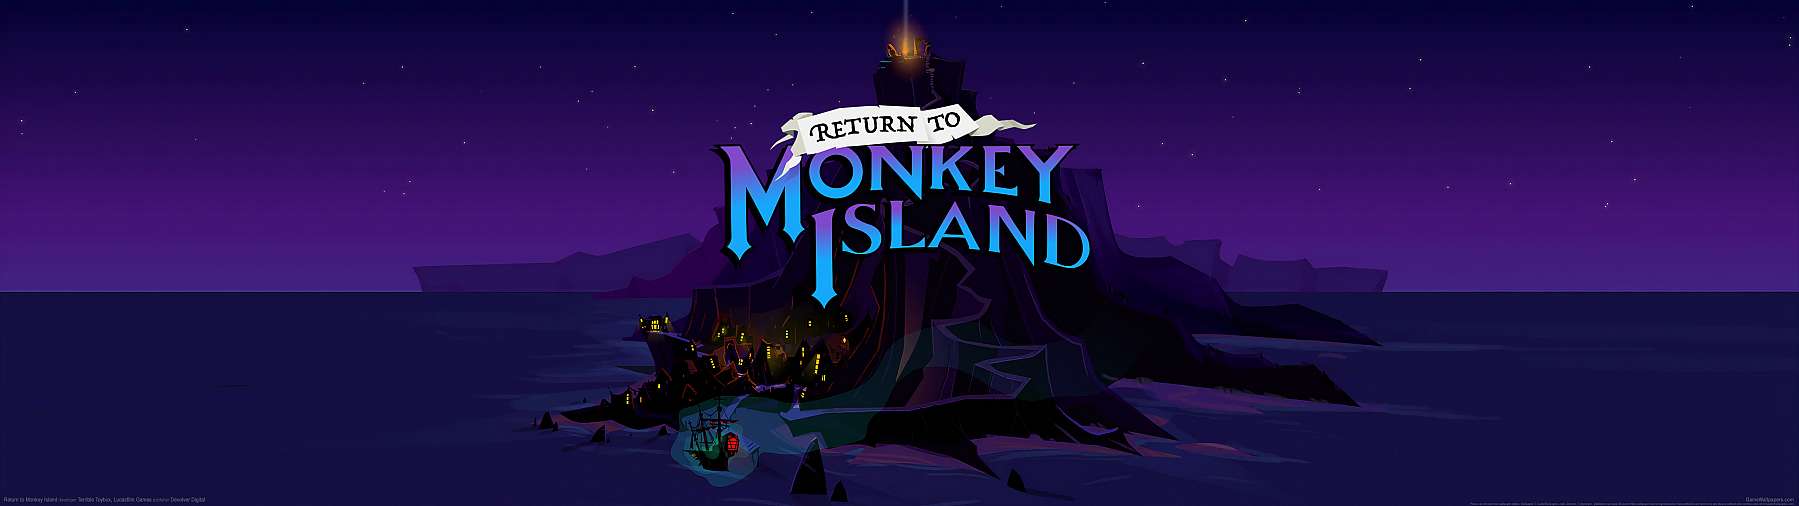 Return to Monkey Island superwide fondo de escritorio 02